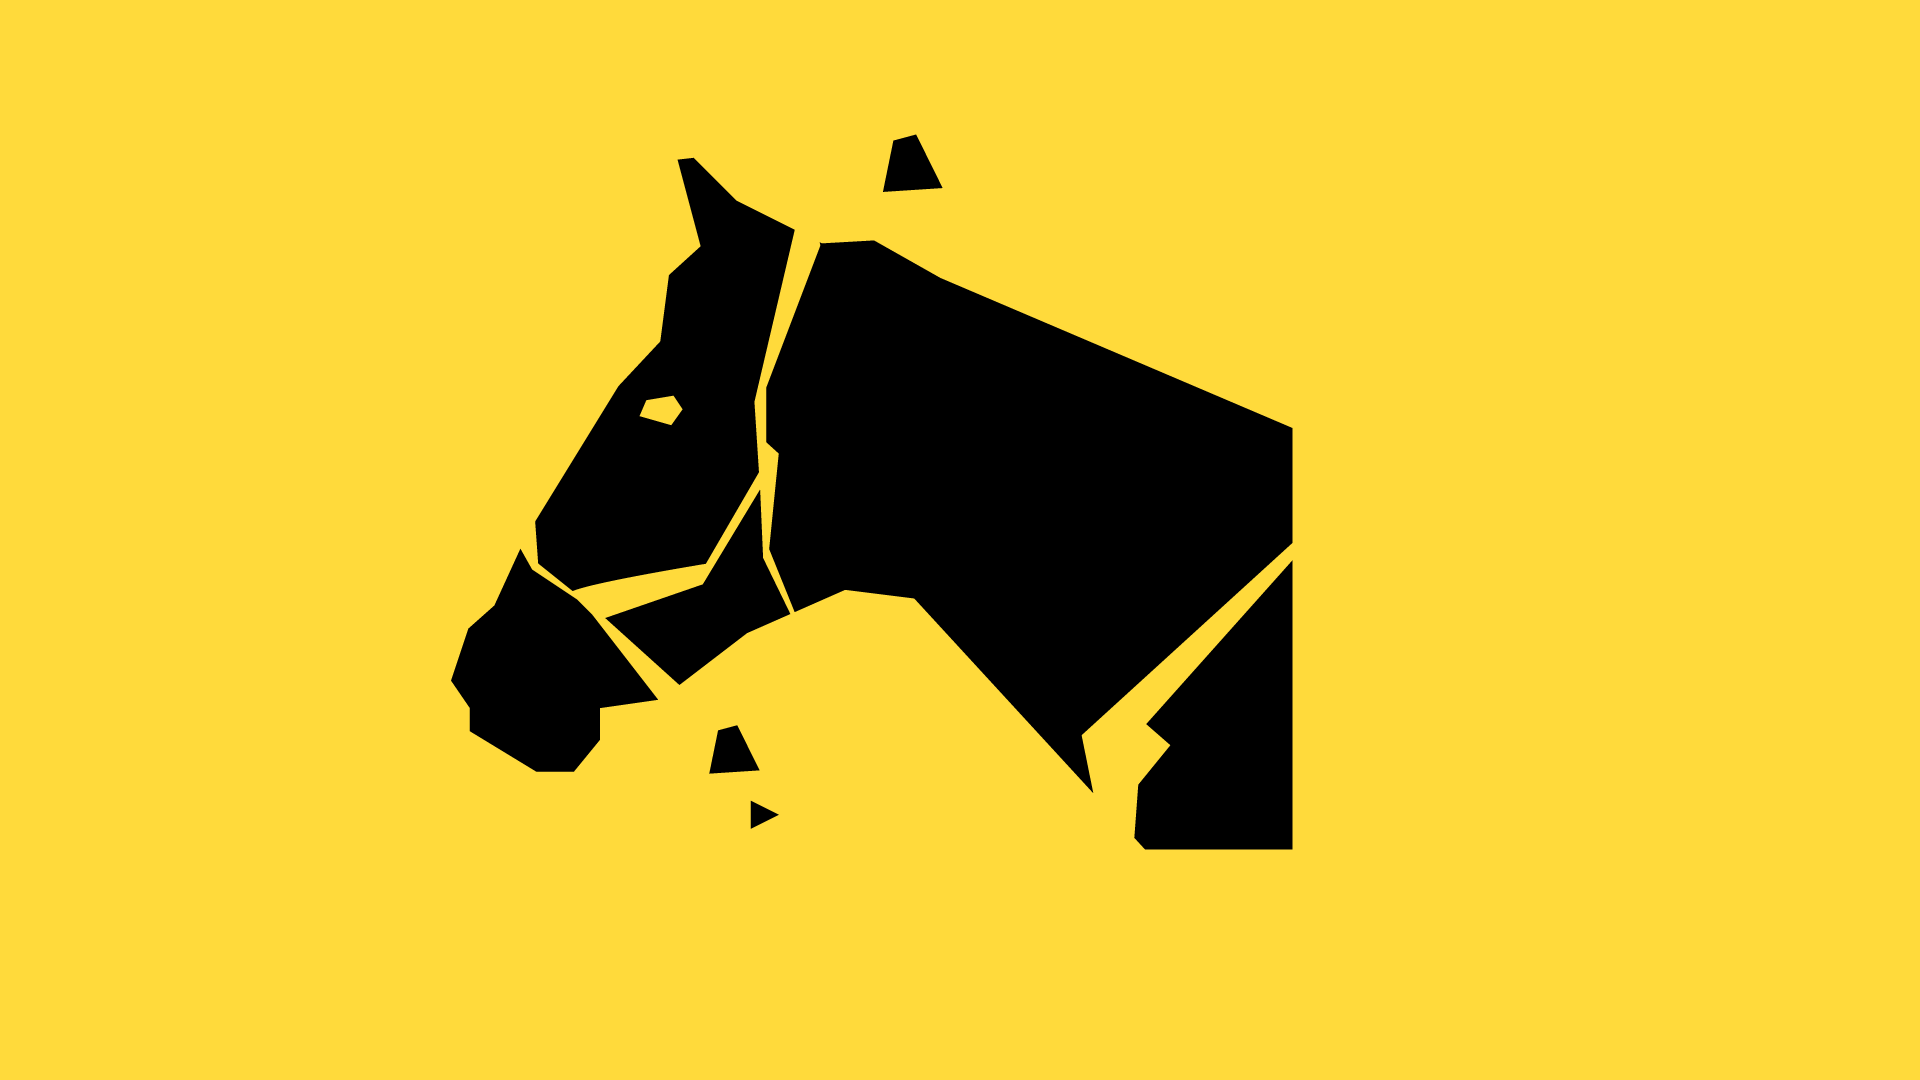 Icon for Horse Whisperer